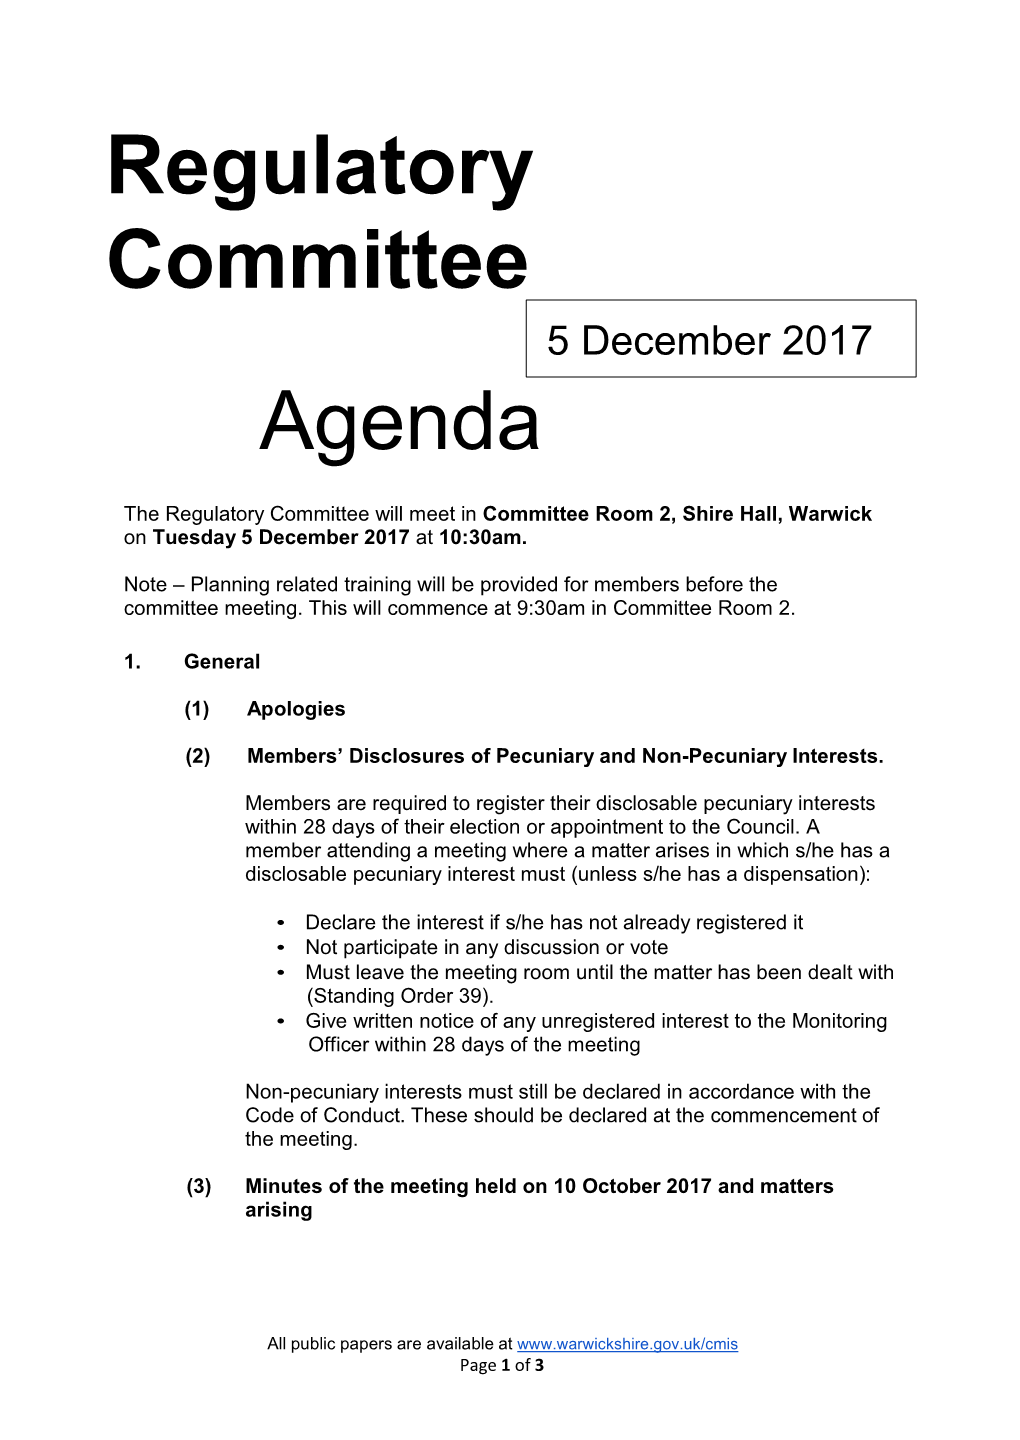 Regulatory Committee Agenda